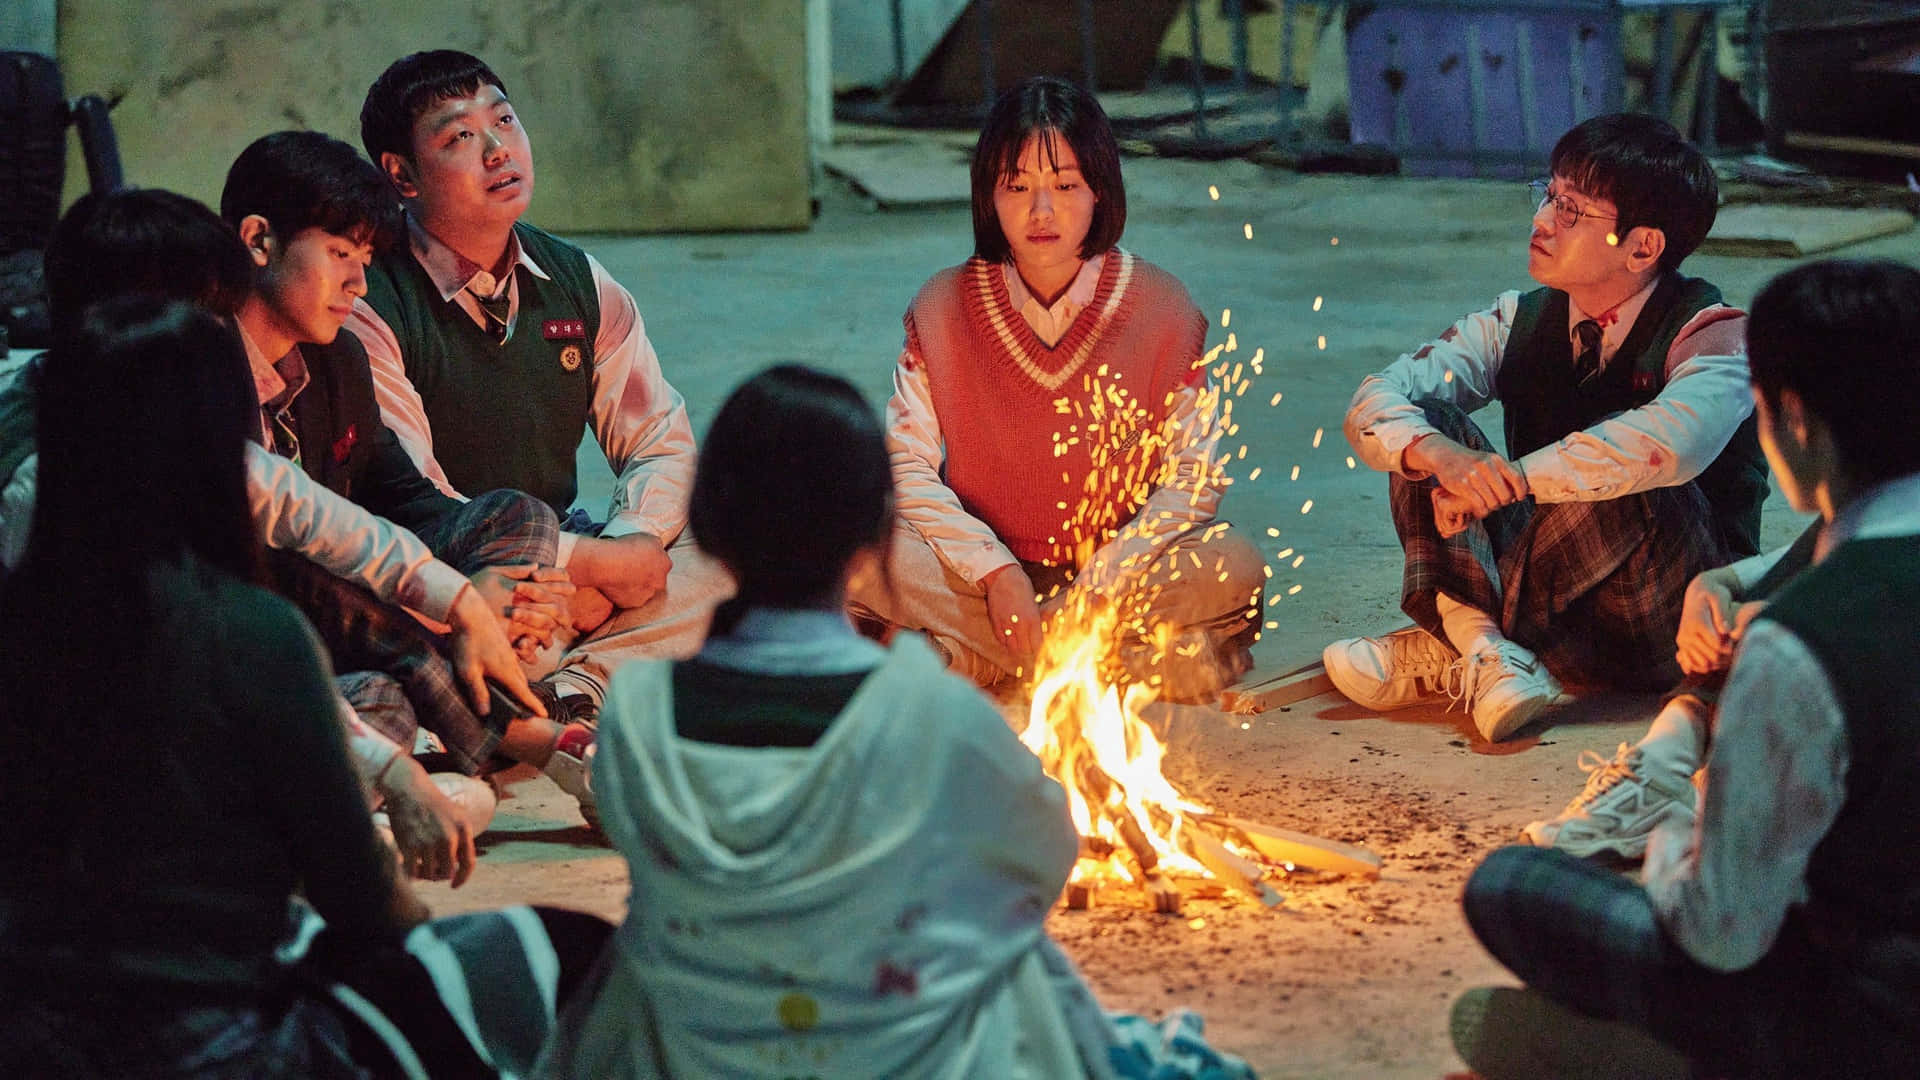 Einegruppe Von Menschen Sitzt Um Ein Feuer Herum